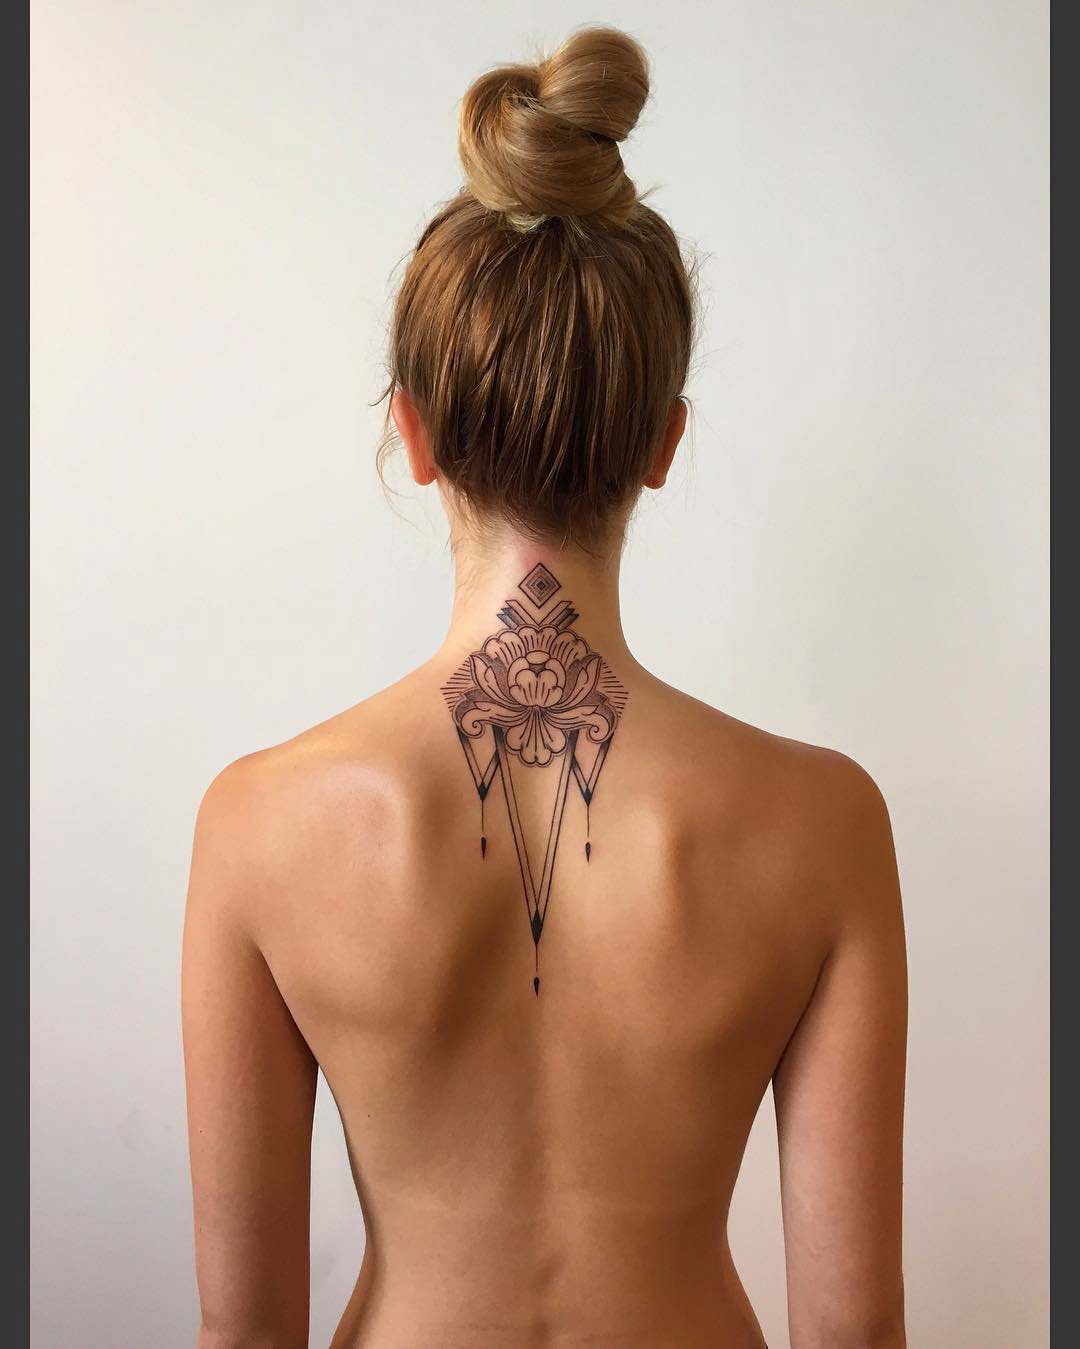 Nape tattoos - Best Tattoo Ideas Gallery